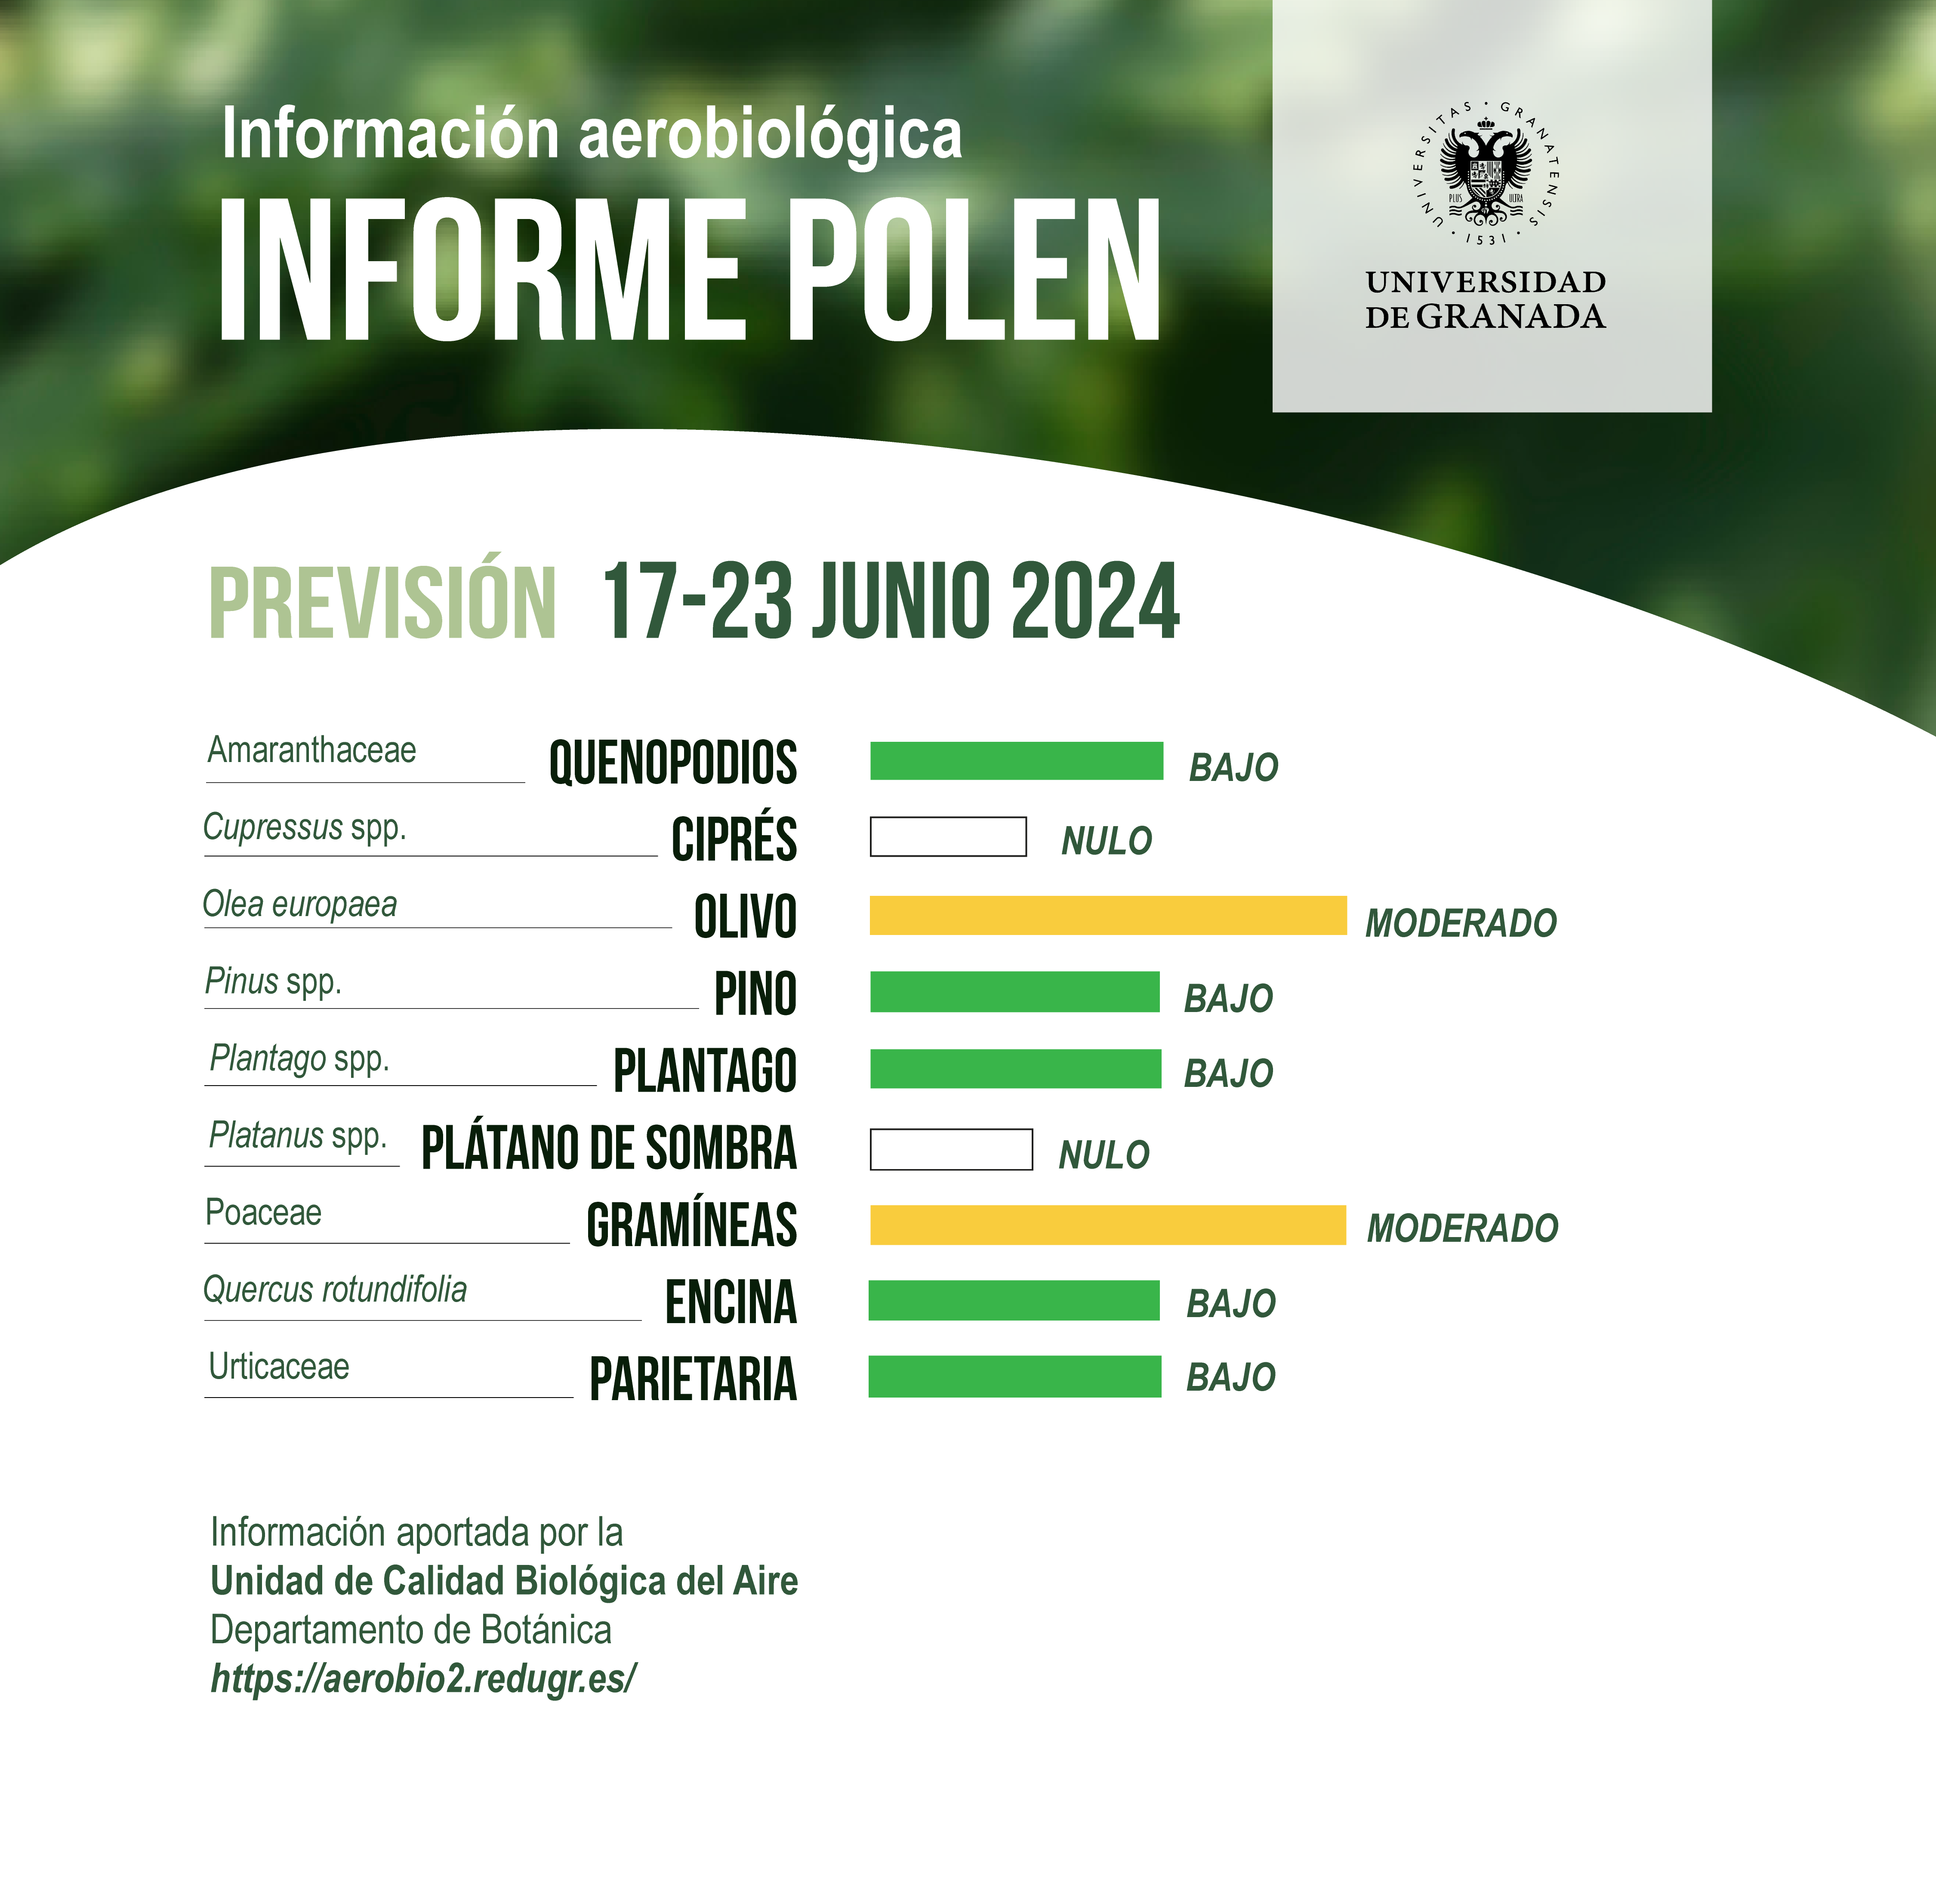 Informe Polen del 17 al 23 de junio de 2024